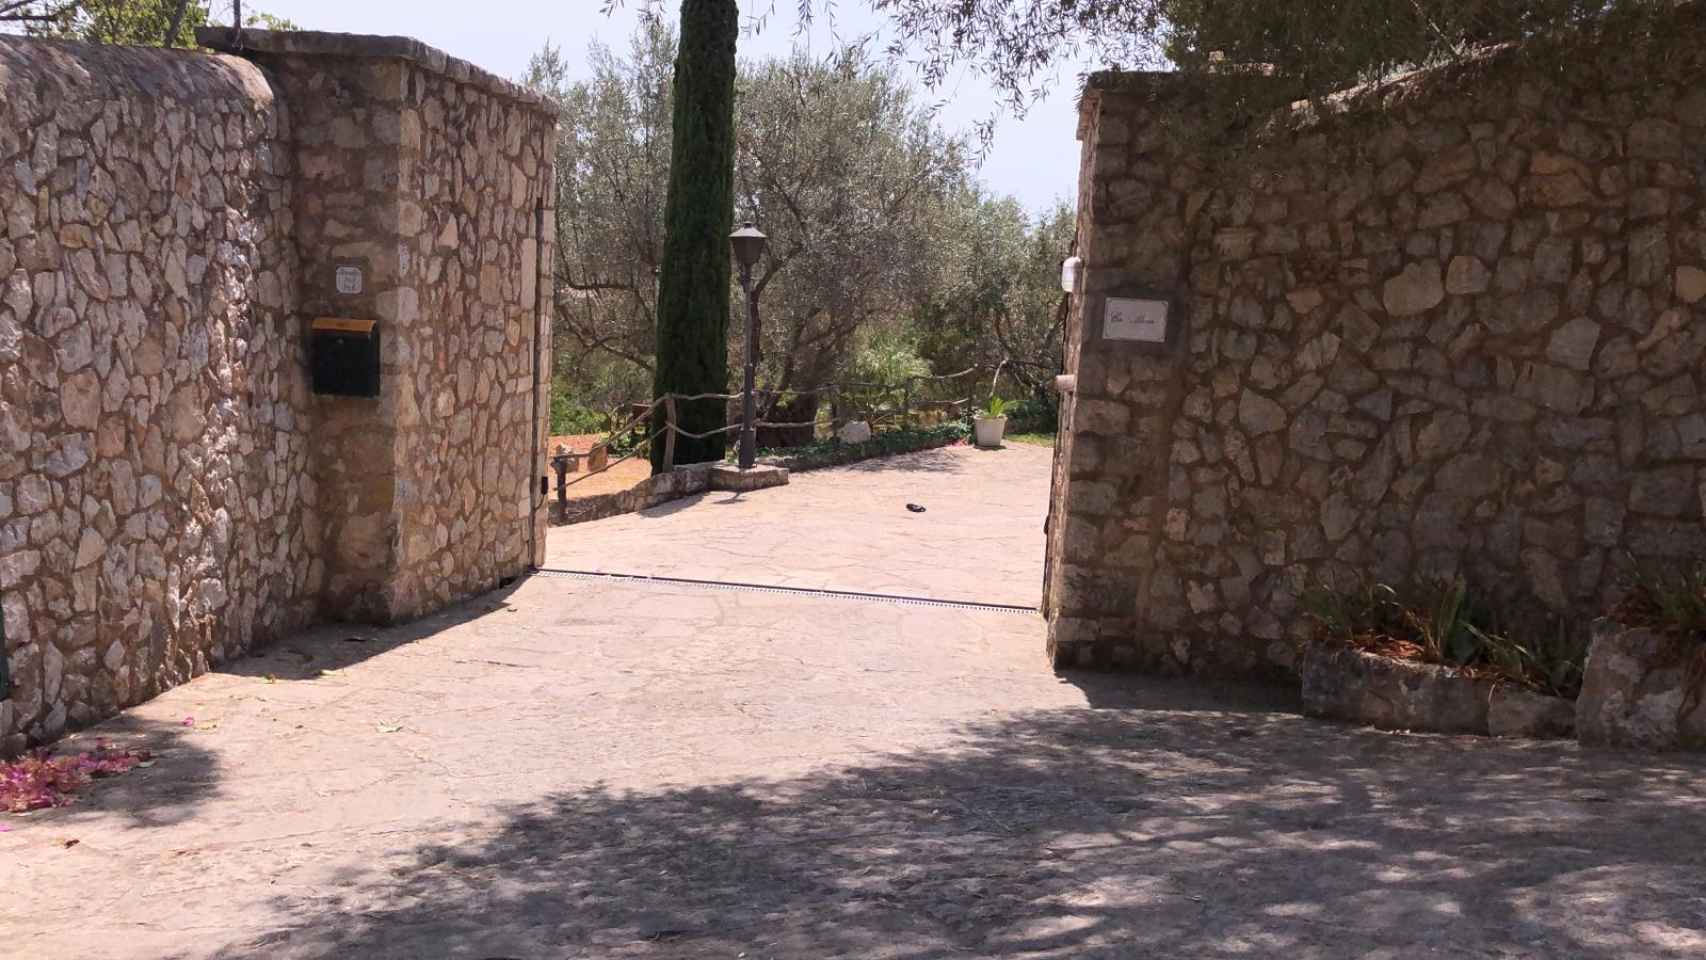 Acceso a la exclusiva villa situada en Alaró, Mallorca, a los pies de la Sierra de Tramuntana.